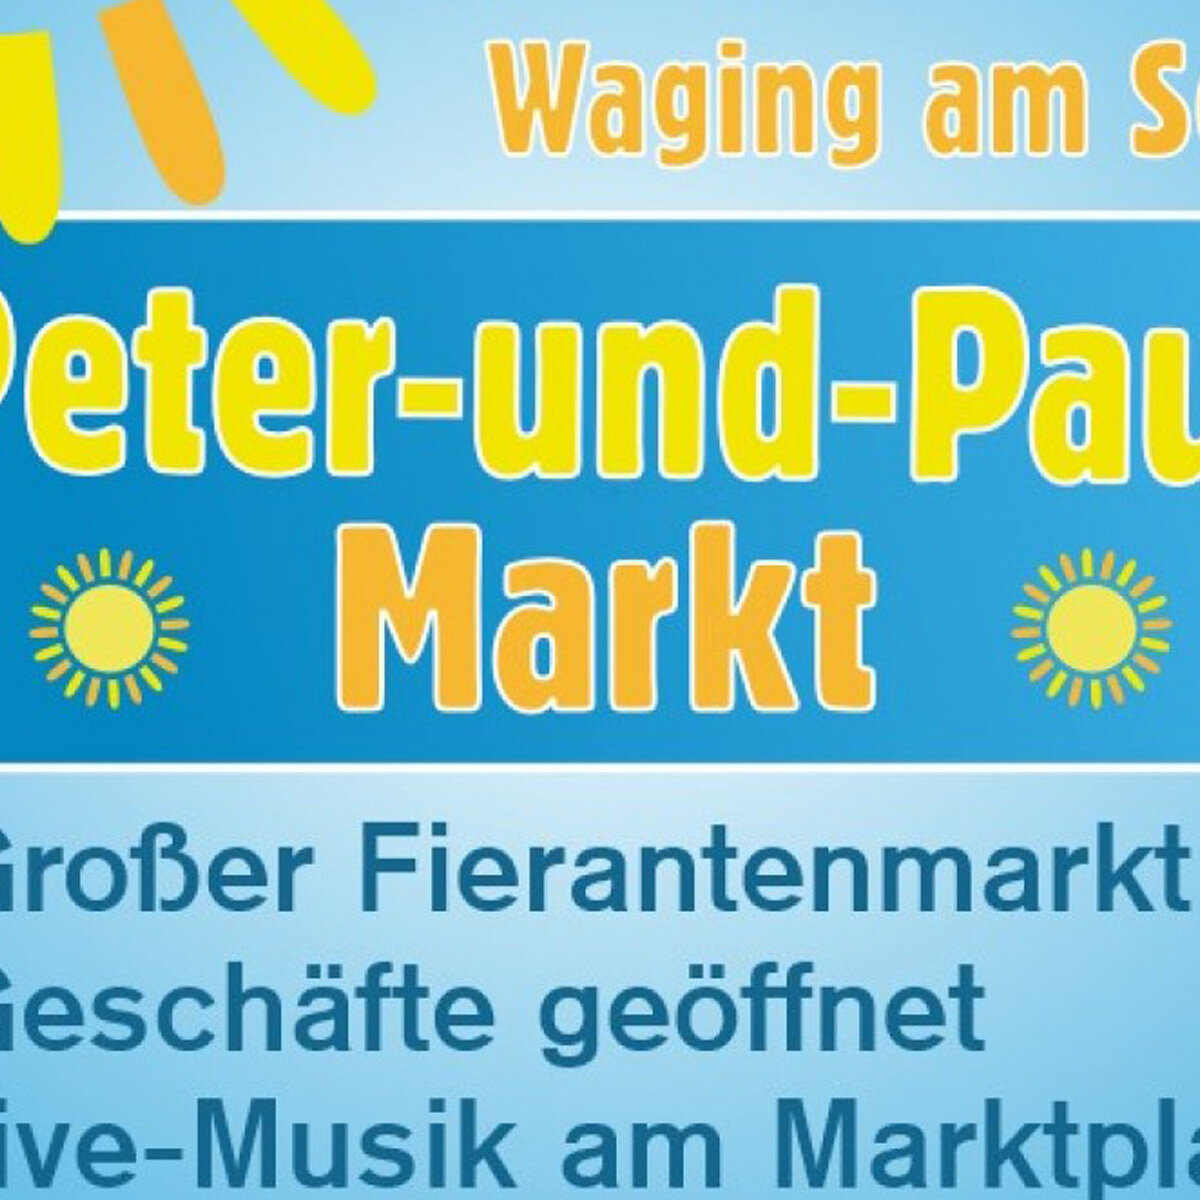 Peter & Paul-Markt